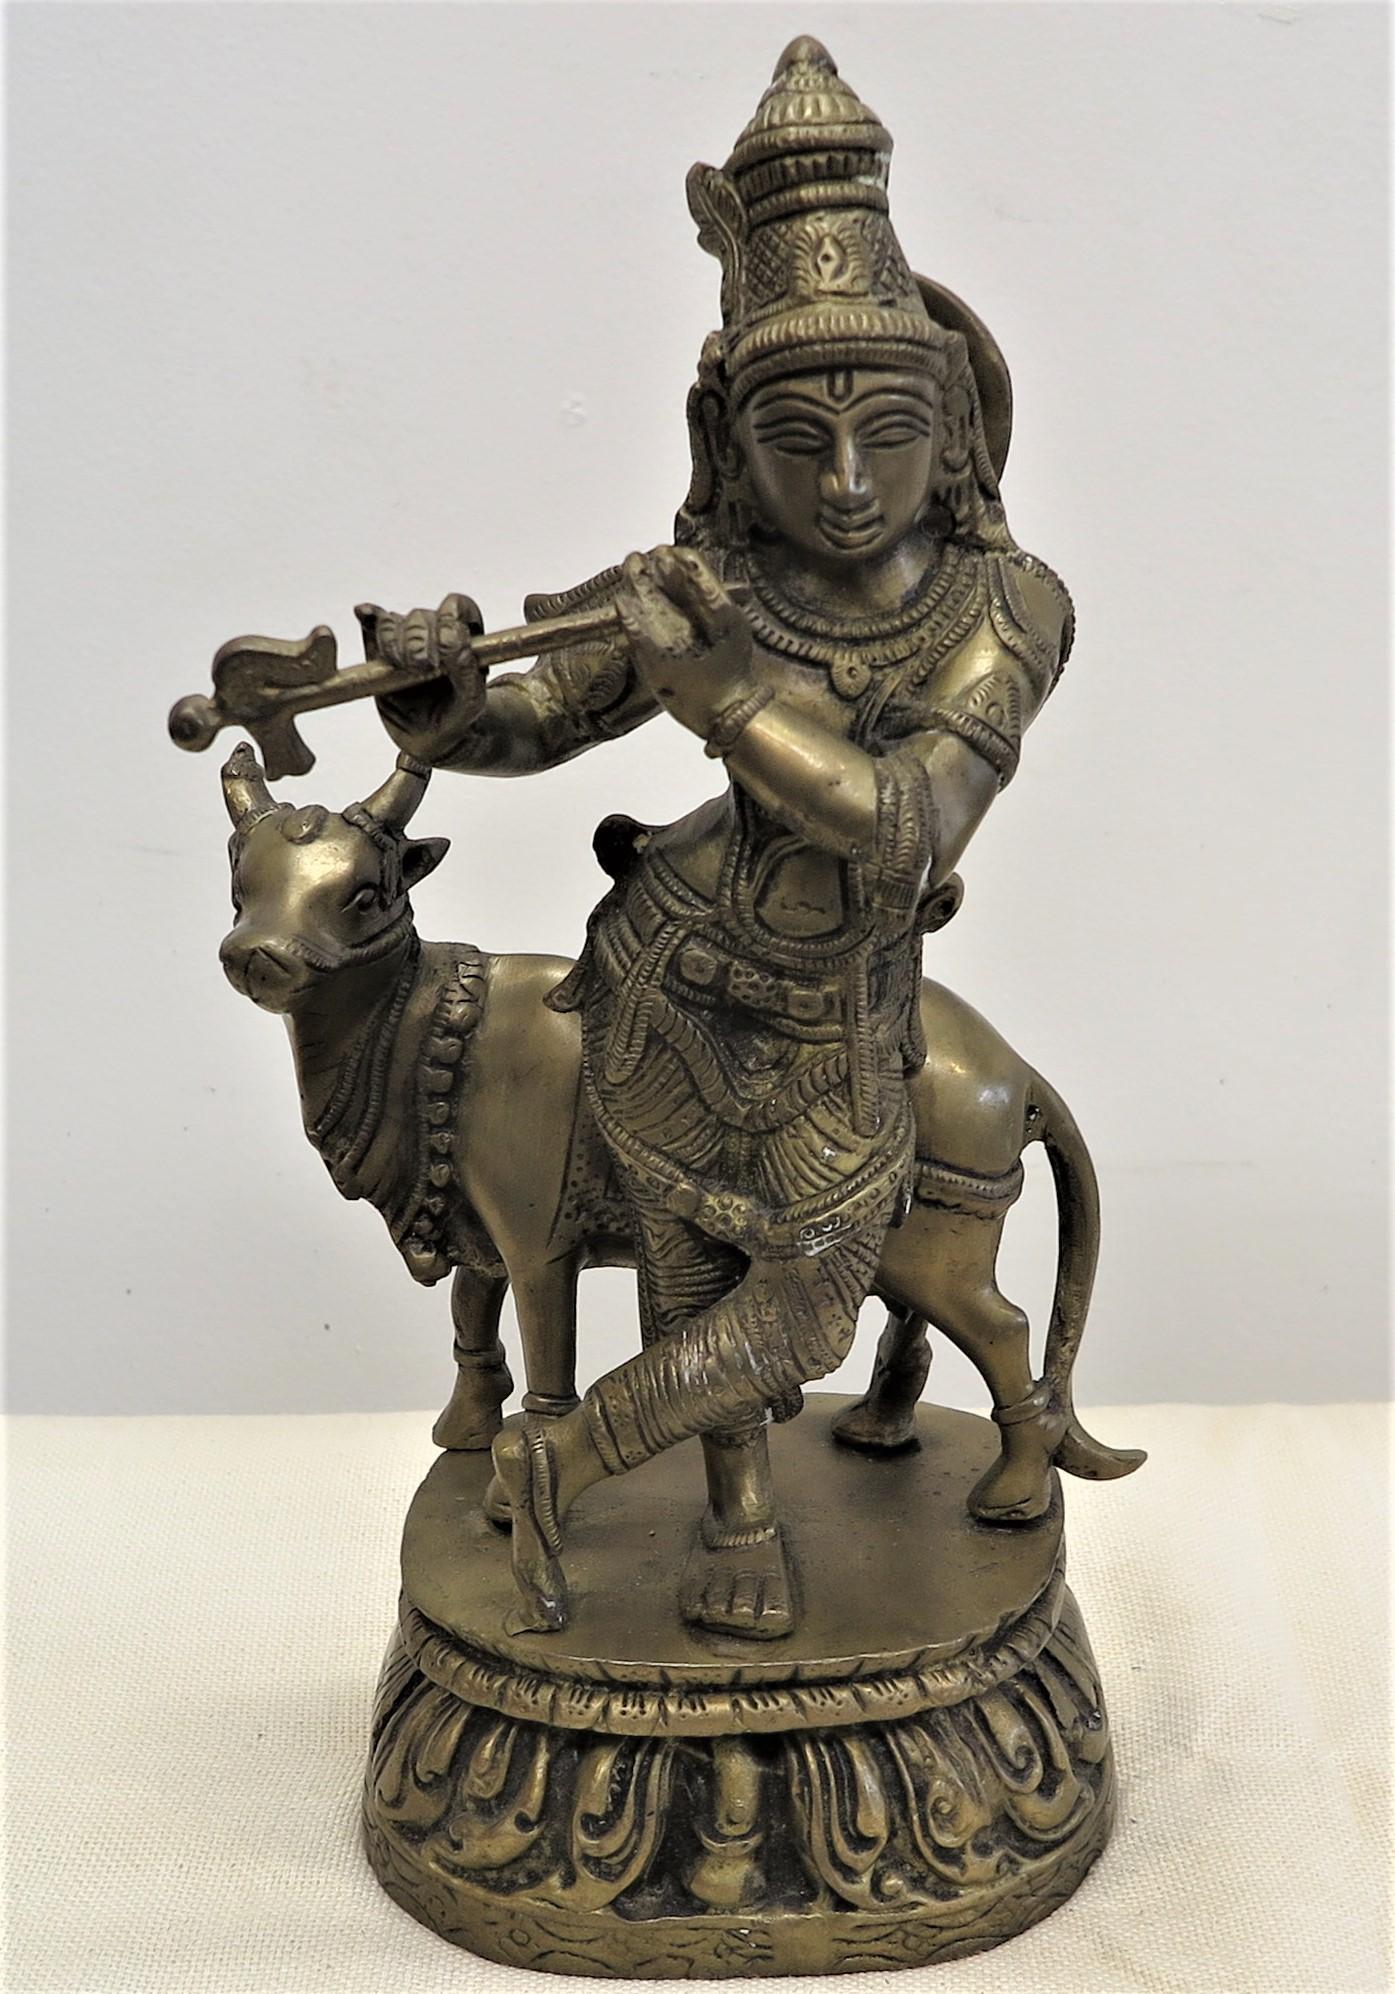 Wunderschöne Messingstatue von Krishna mit Nandi. Messing Krishna mit Nandi Statue Vintage handgefertigt mit Wachsausschmelzverfahren für Gießen. Krishnas Reittier ist Nandi. Nandi, die Kuh, steht für göttliche Bliss, Freude, Vergnügen, heiter,